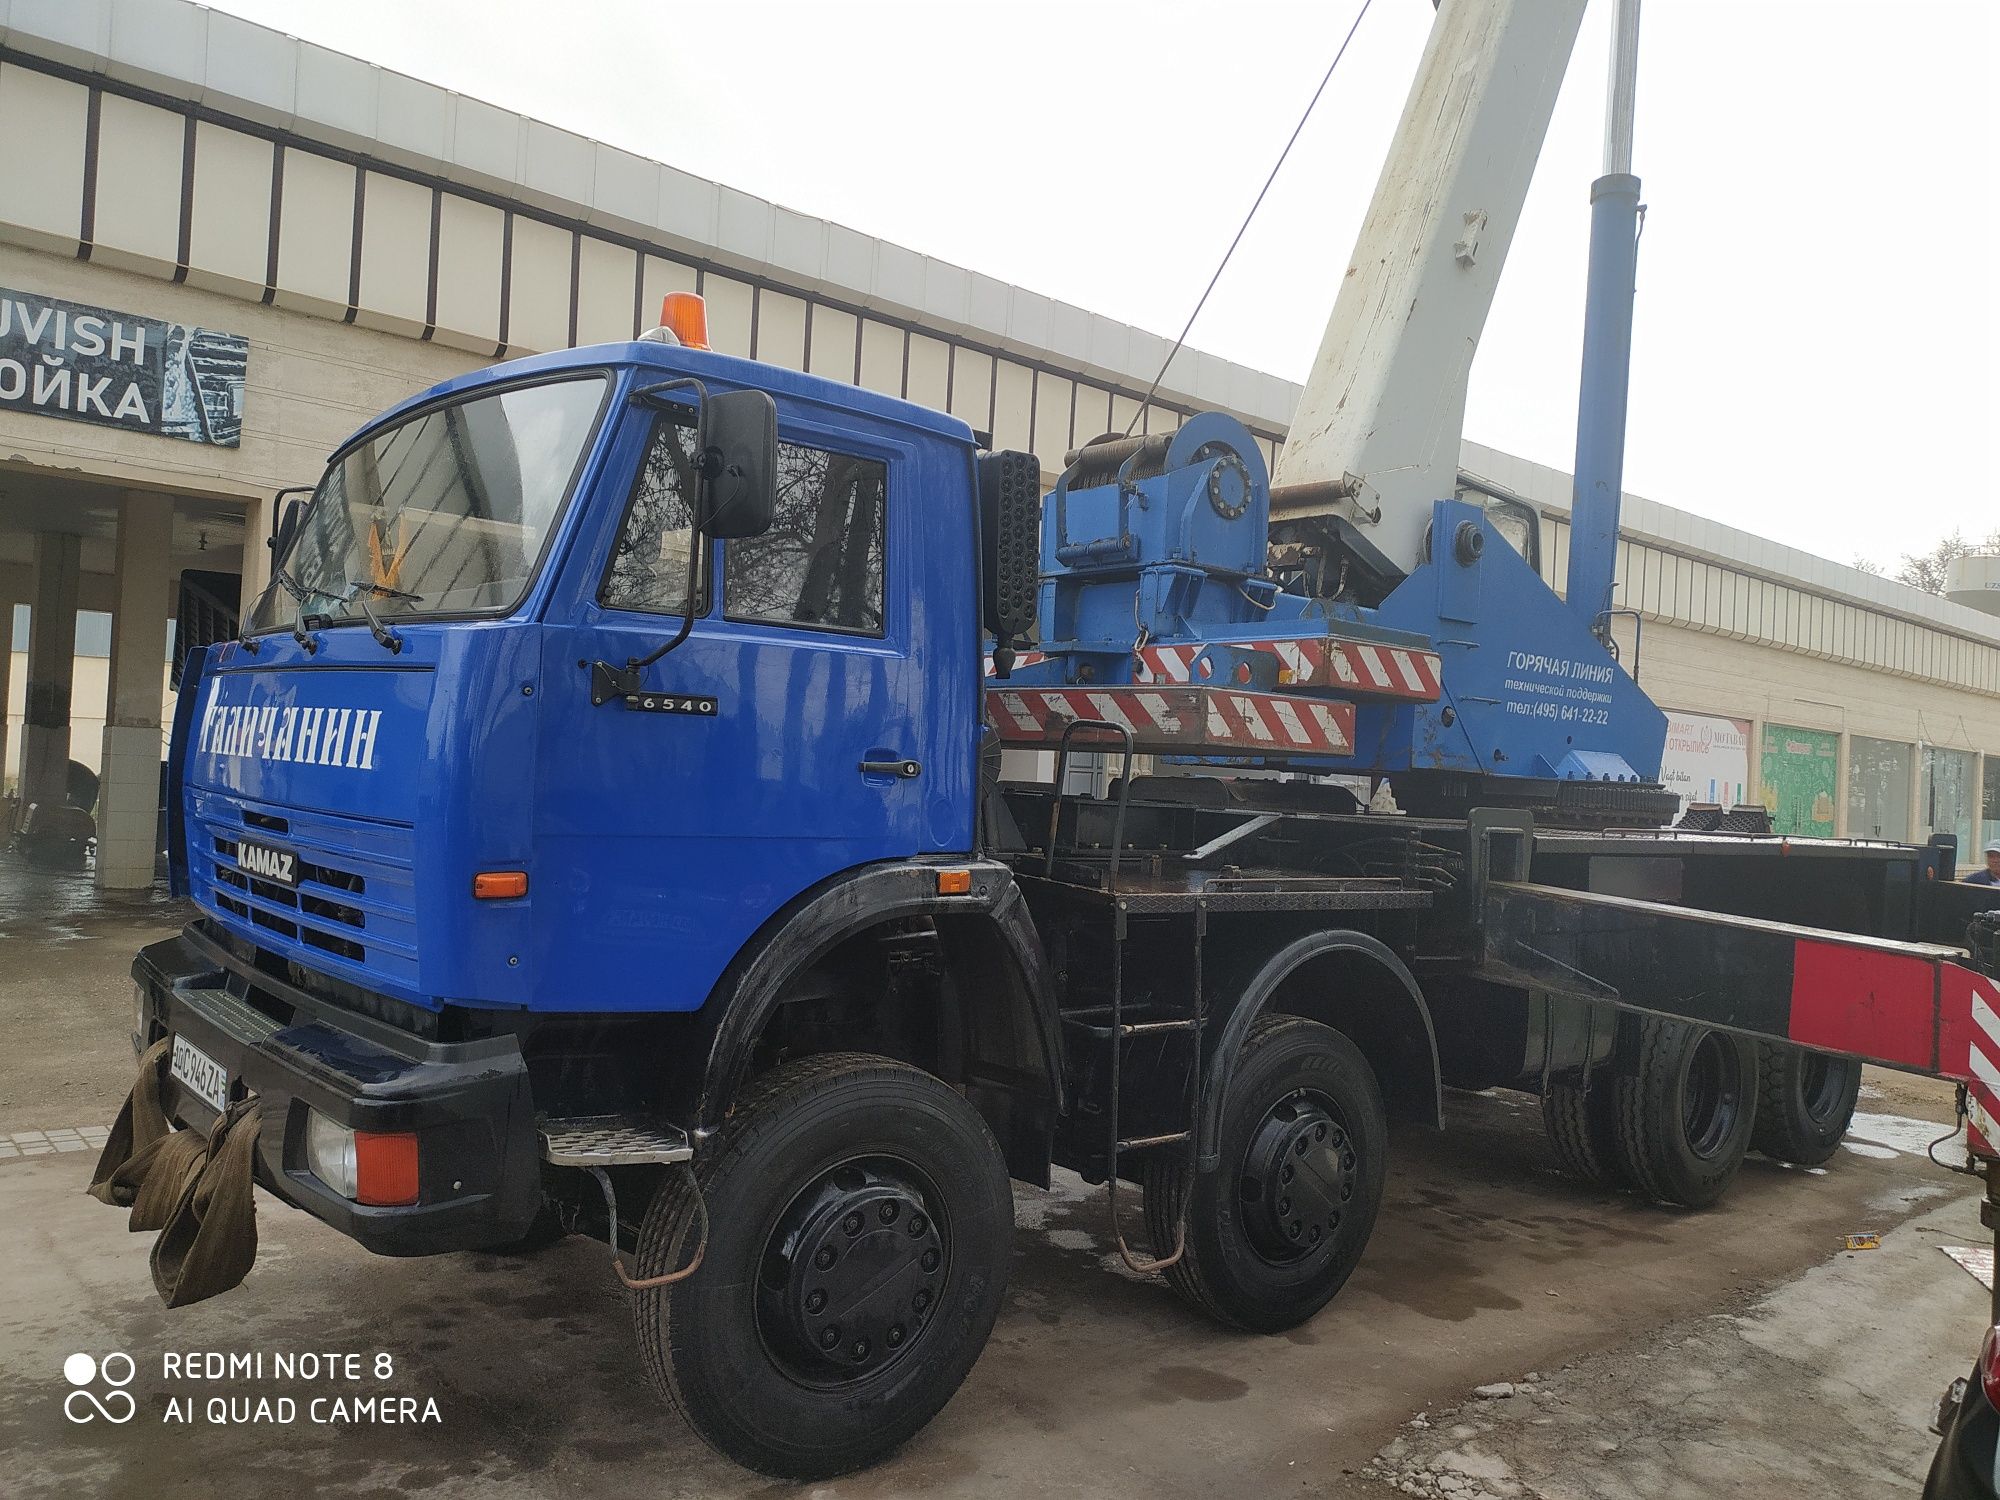 Автокран КамАЗ Галичанин 32 тонн (2013)